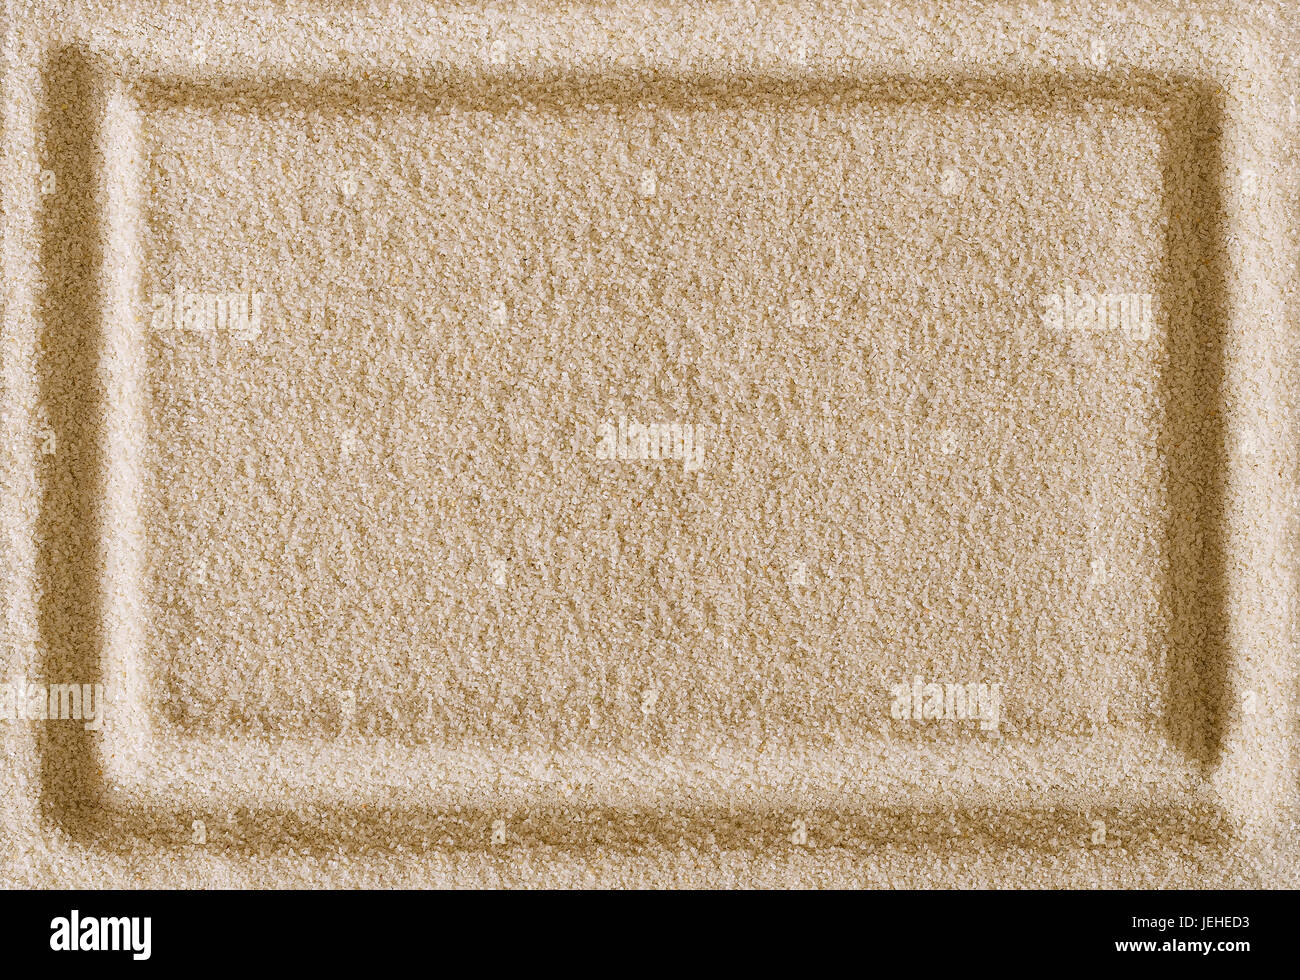 Forme Rectangle mentions légales en surface du sable. Bordure rectangulaire dans une zone de sable plat comme un cadre et d'utiliser comme arrière-plan. Macro photo. Banque D'Images